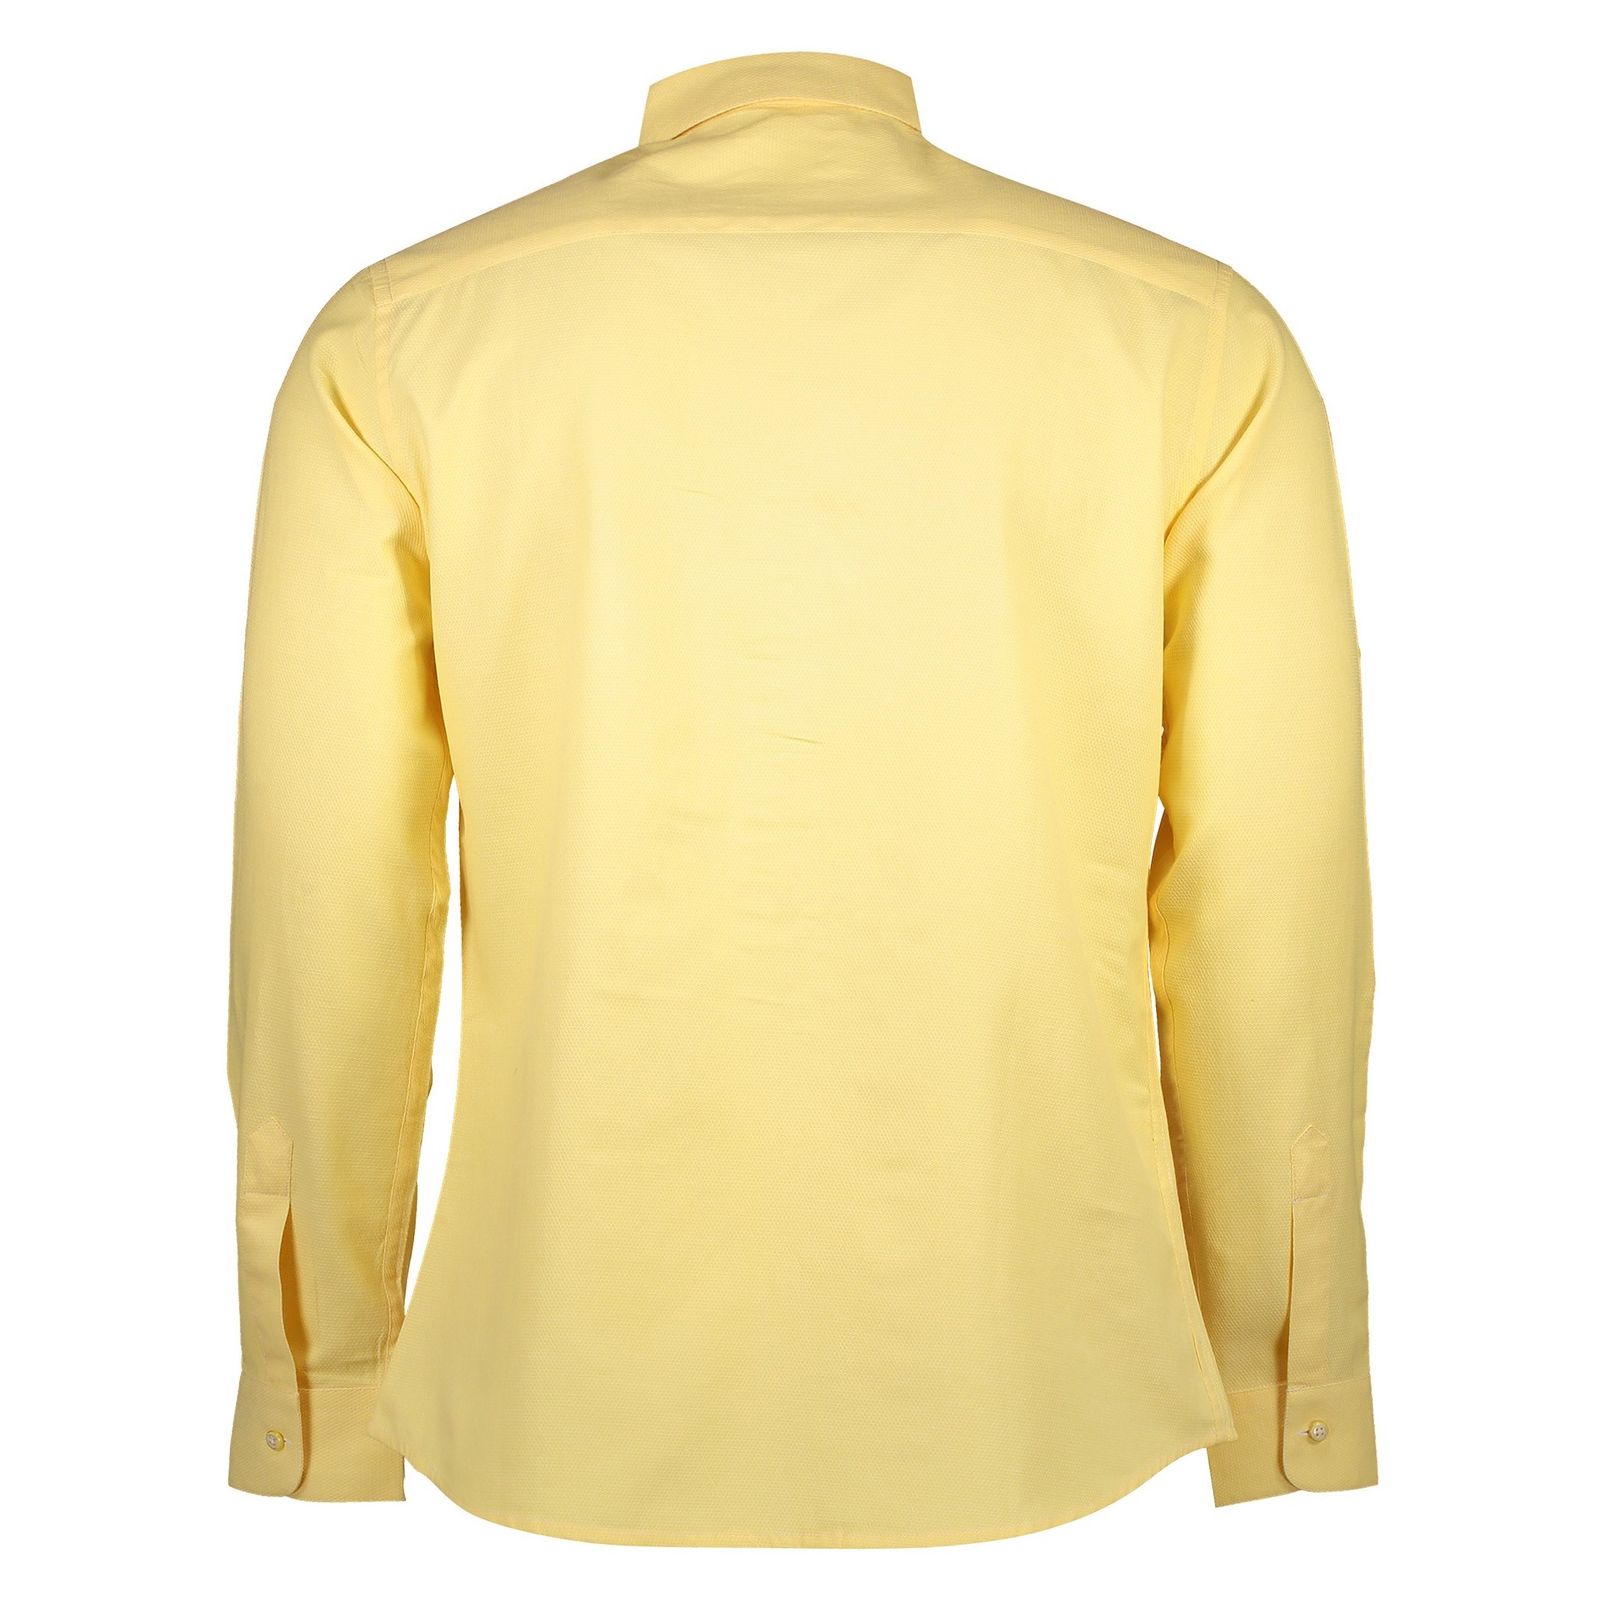 پیراهن نخی یقه برگردان مردانه - رونی - زرد - 4